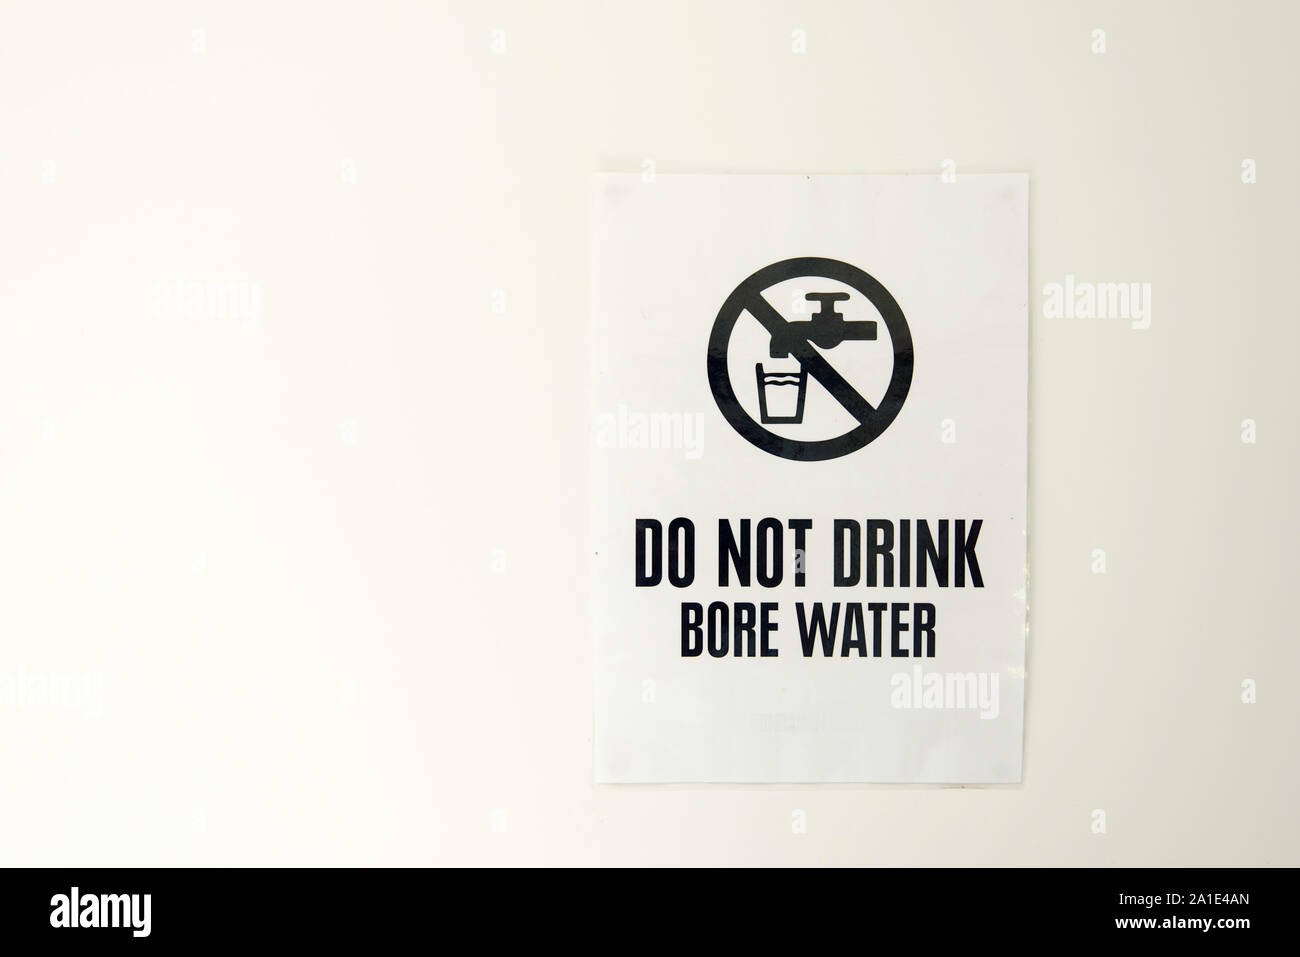 Un alésage de l'eau signe épinglé à un mur blanc avise la population de ne pas boire l'eau Banque D'Images